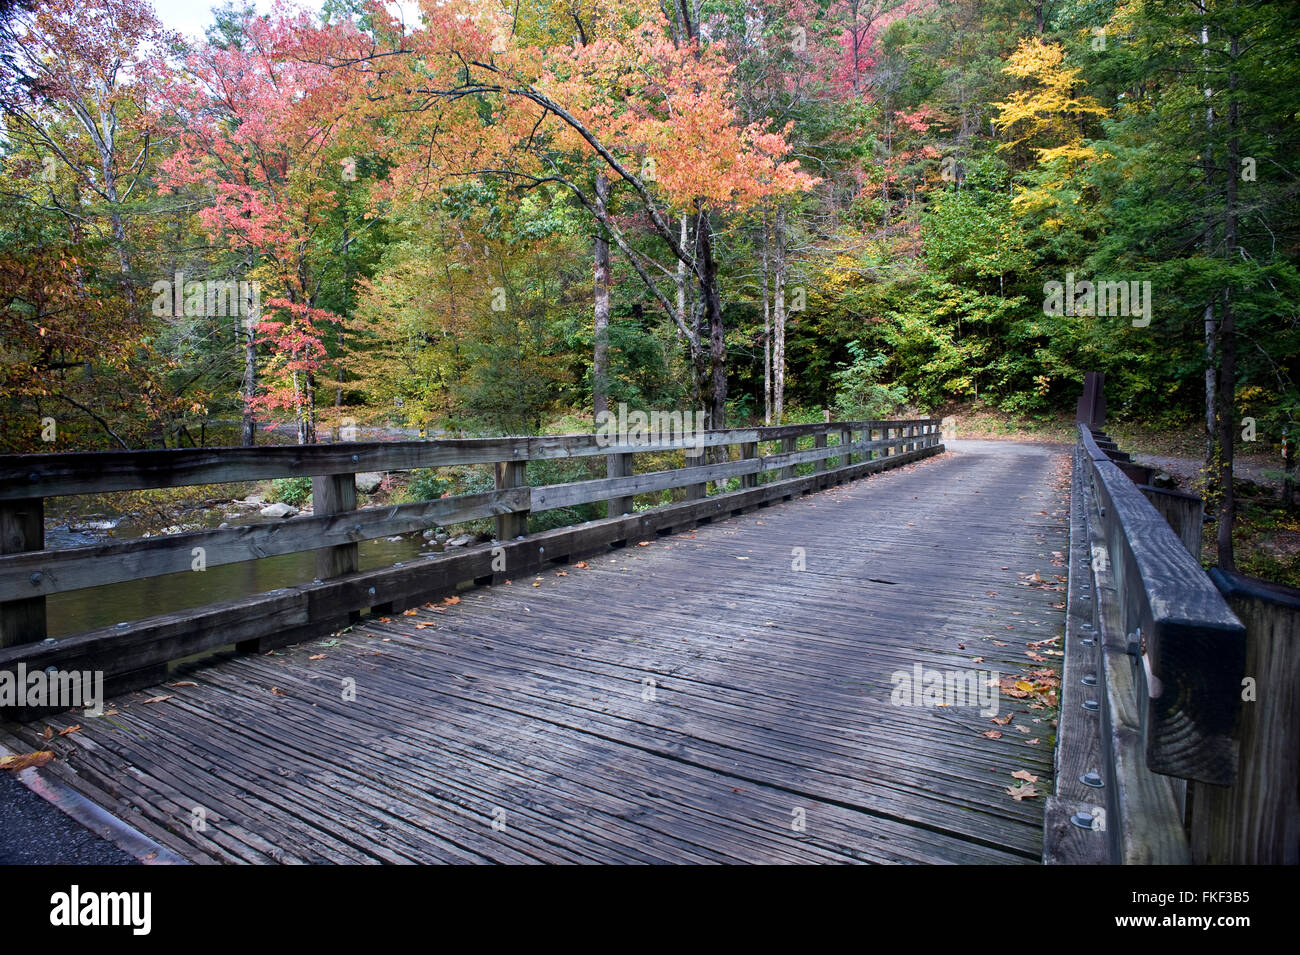 Wooden Bridge Stock Photo